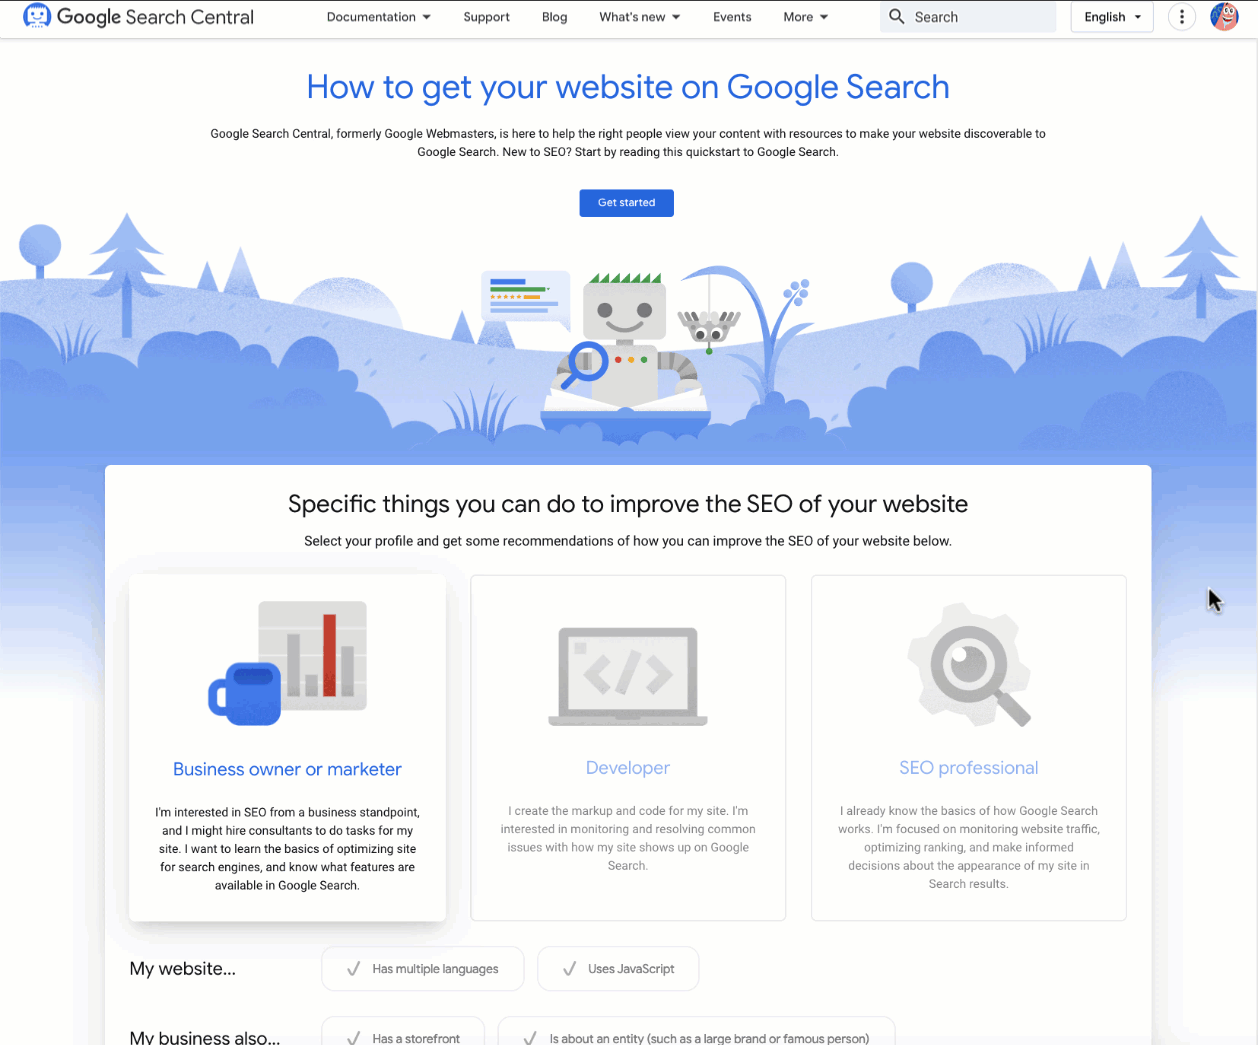 Il nuovo tool interattivo di Google Search Central